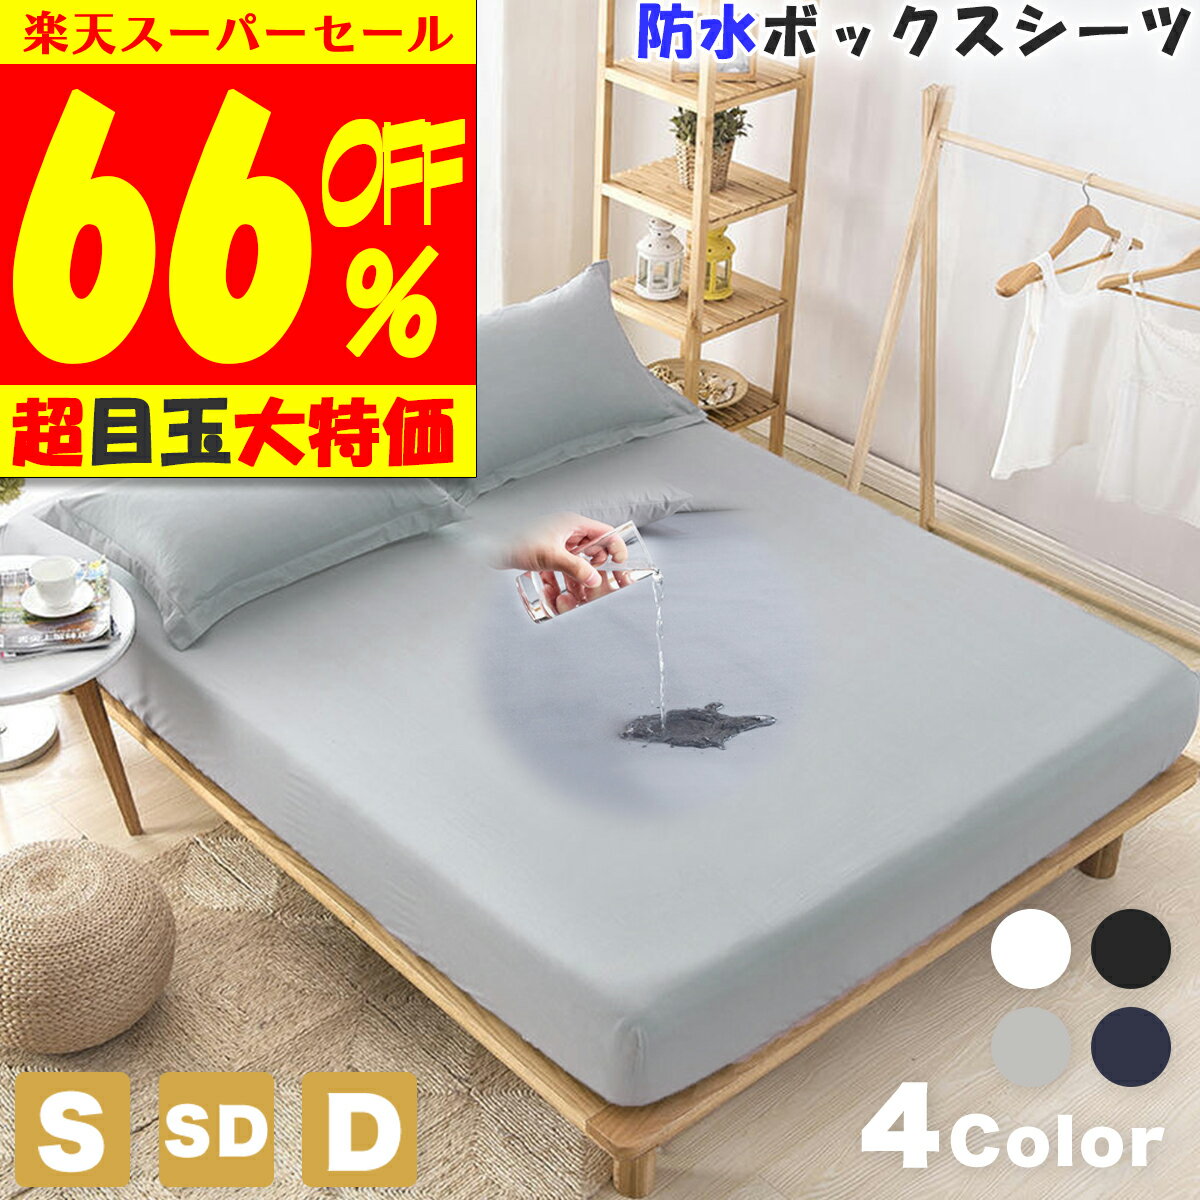 京都 岩本繊維 iwamototouch ベッドマットレス用 ボックスシーツ BOXシーツ スリーピングカラー SLP ワイドダブルサイズ 155×200×30cm 10色 日本製